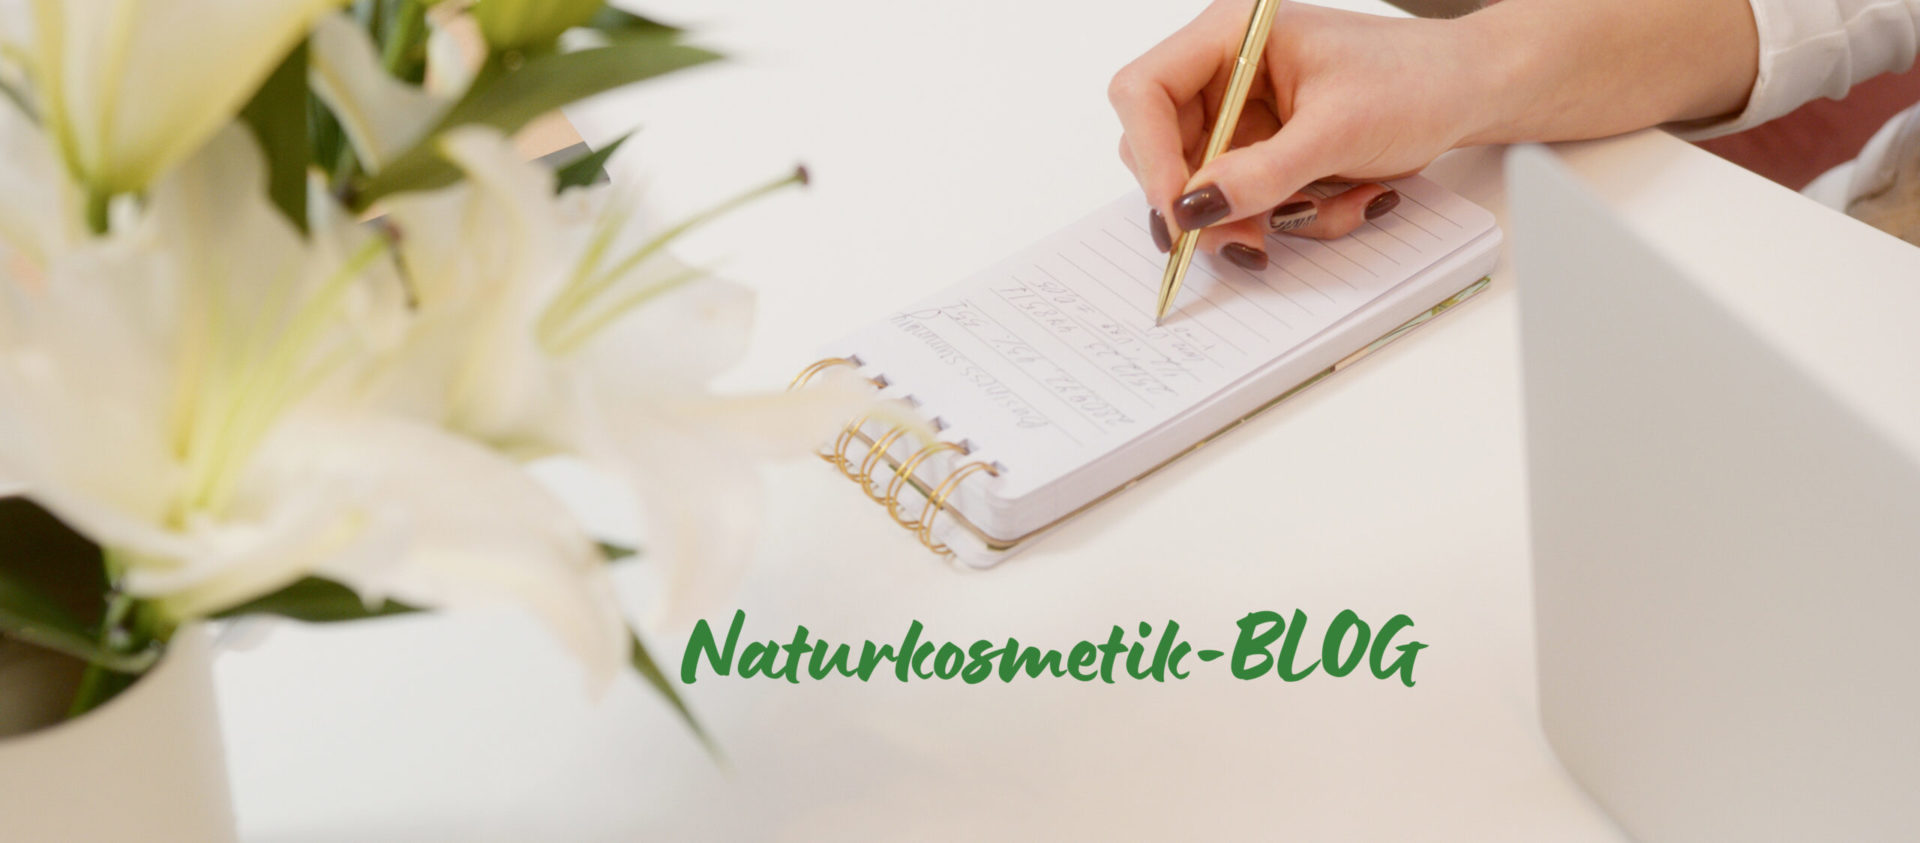 Naturkosmetik-Blog: Pflege mit Pflanzenkraft für nachhaltige Pflege